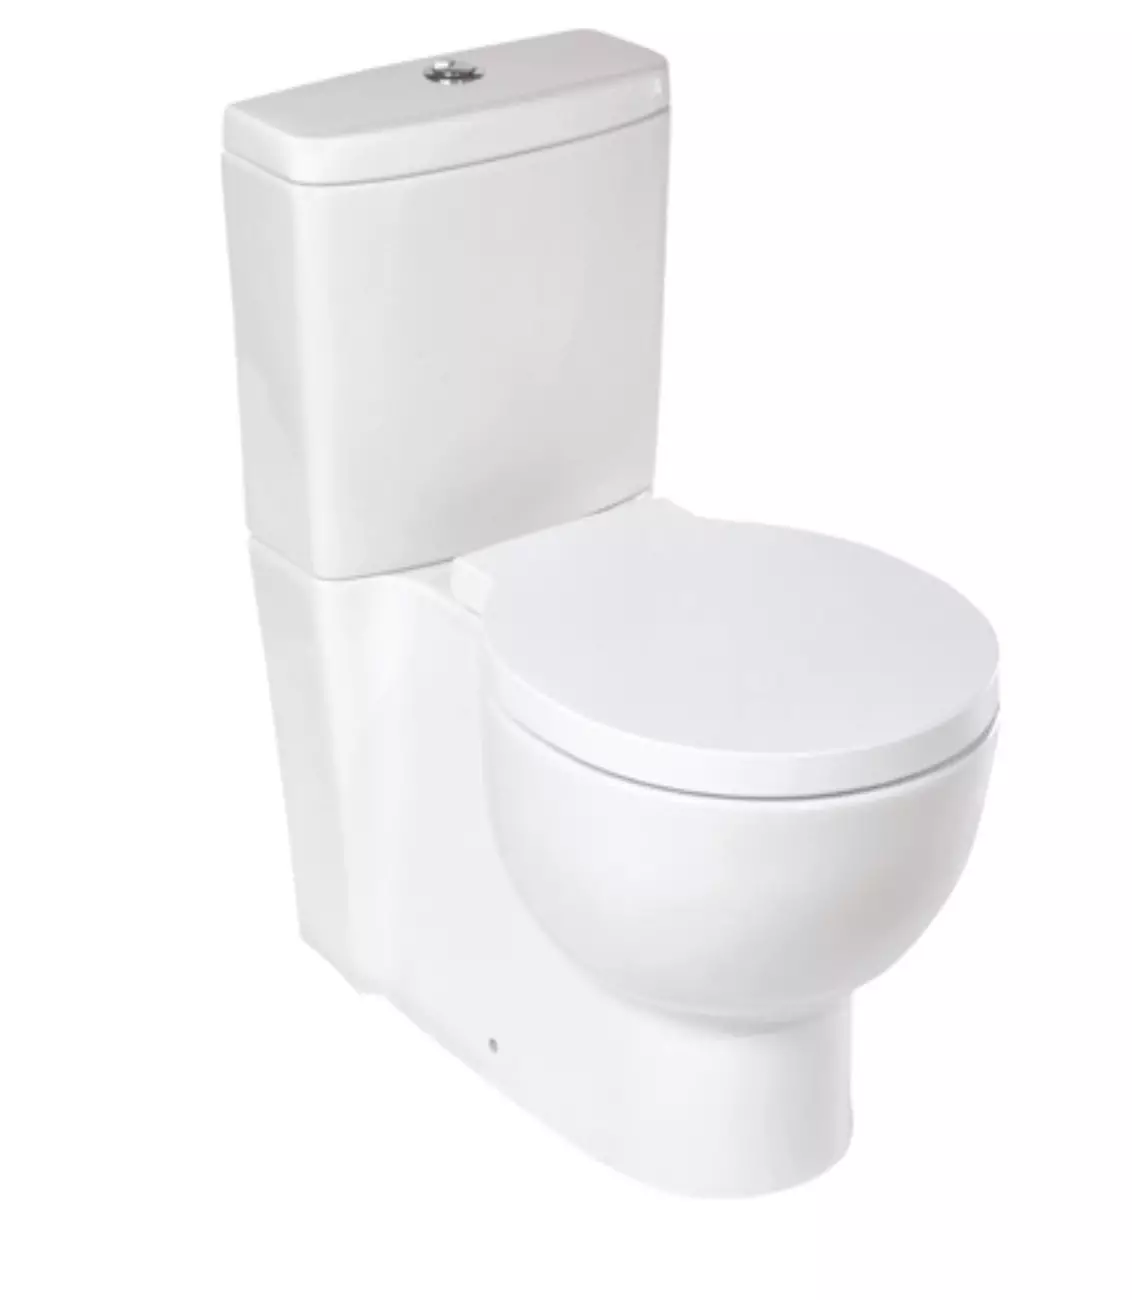 Bearless Floor WC: Mitä malleja ilman RIM on parempi? Valitsemalla WC-kulho säiliöllä ja ilman sitä, posliinista tai faiencesta. Luokitus 10533_23